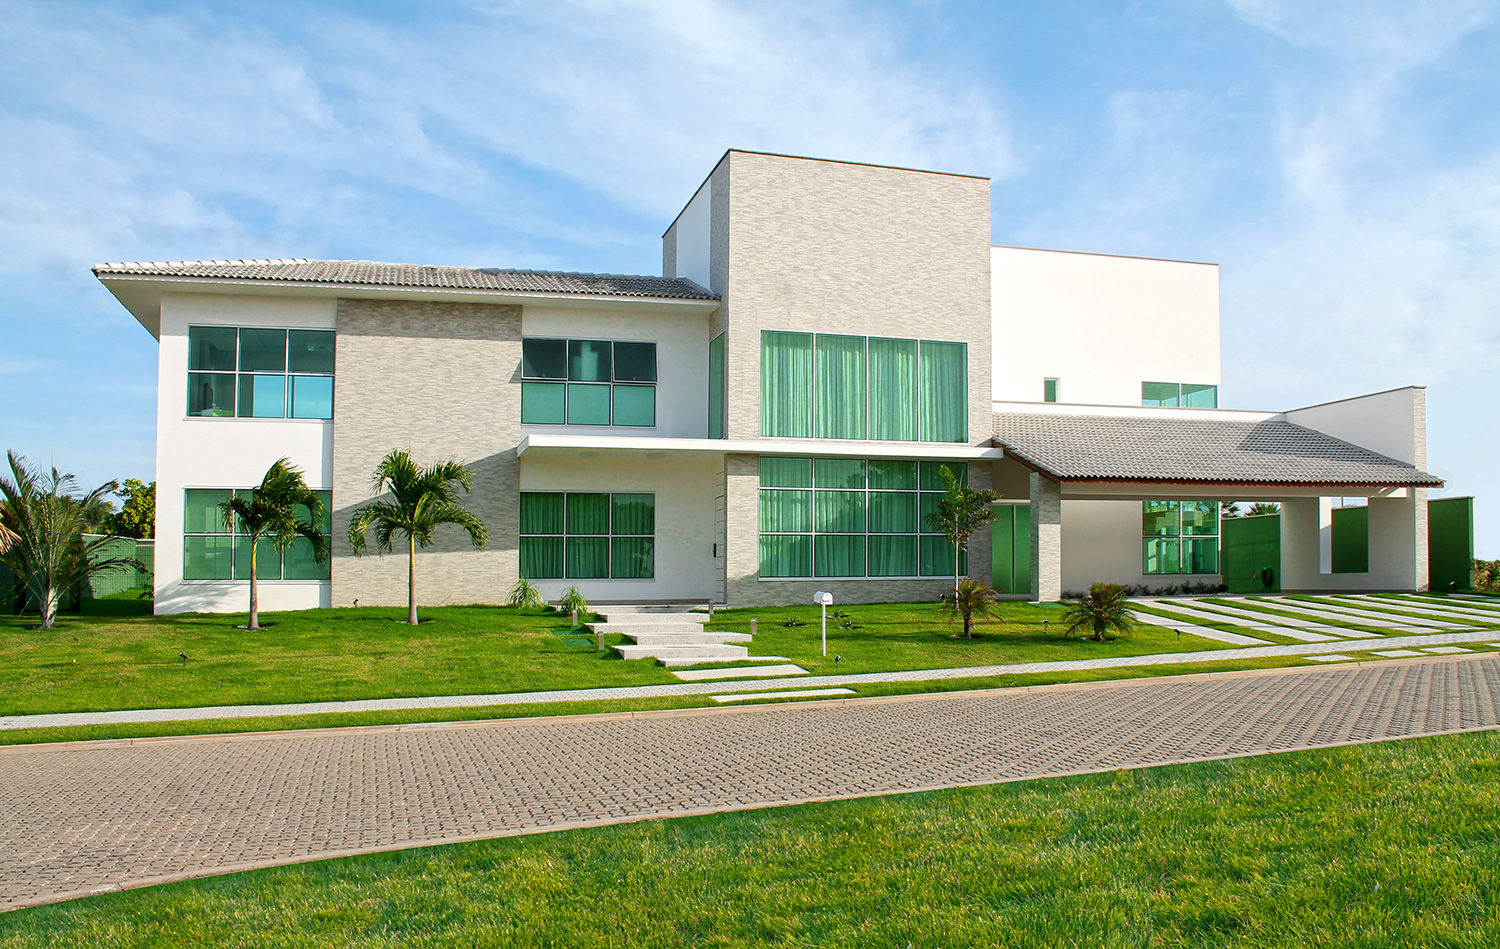 Residência Alphaville Fortaleza, RI Arquitetura RI Arquitetura Single family home